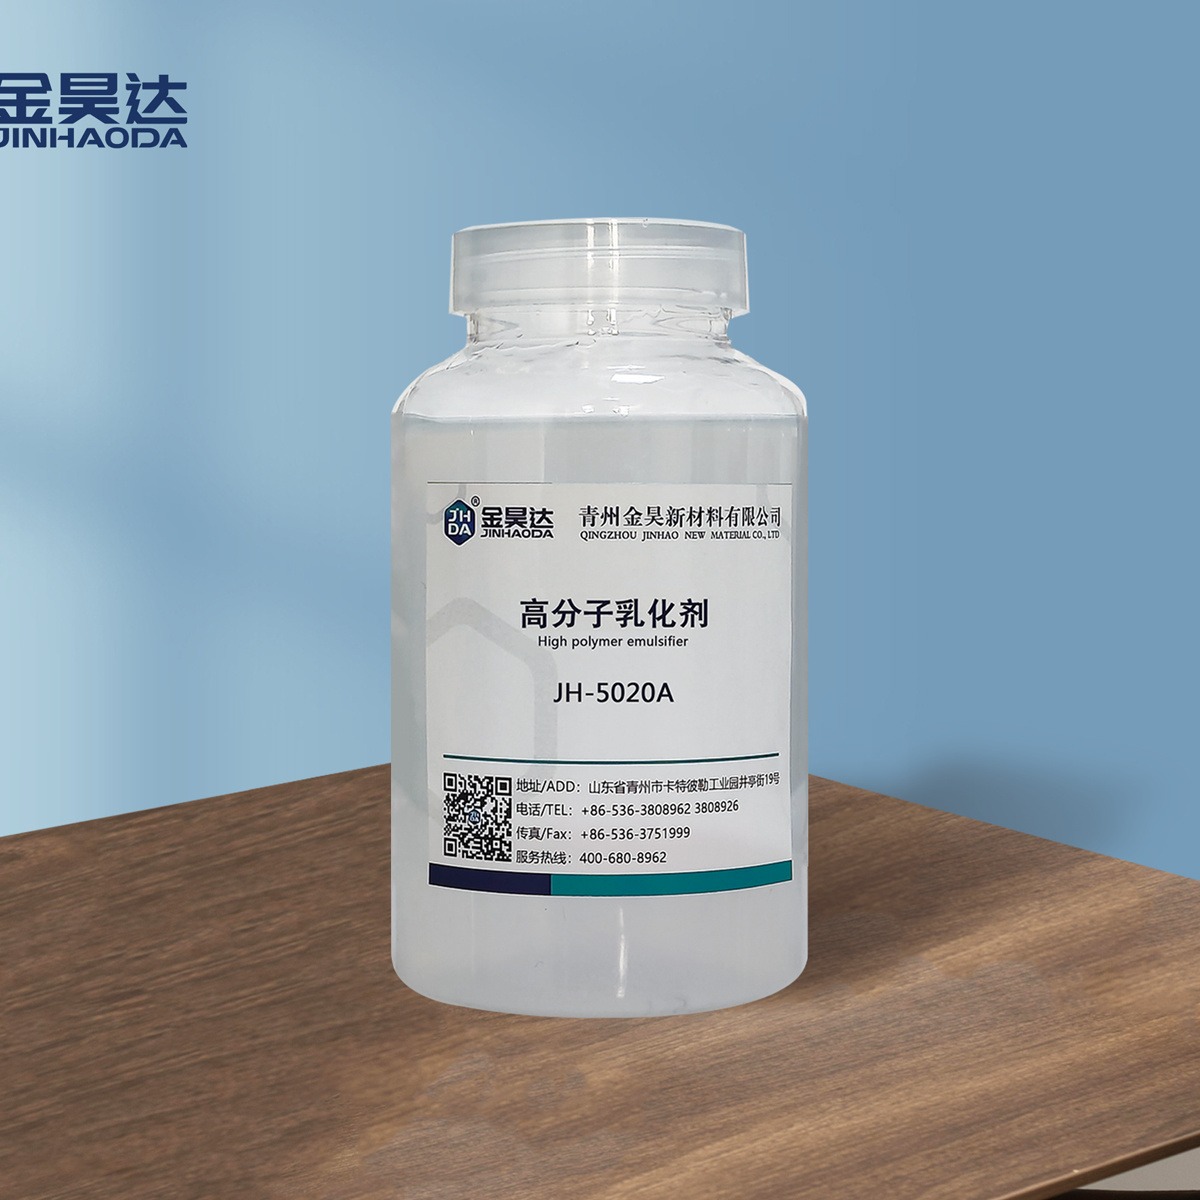 山东JH-5020A高分子akd乳化剂生产厂家 金昊高分子乳化剂 AKD乳化剂图片